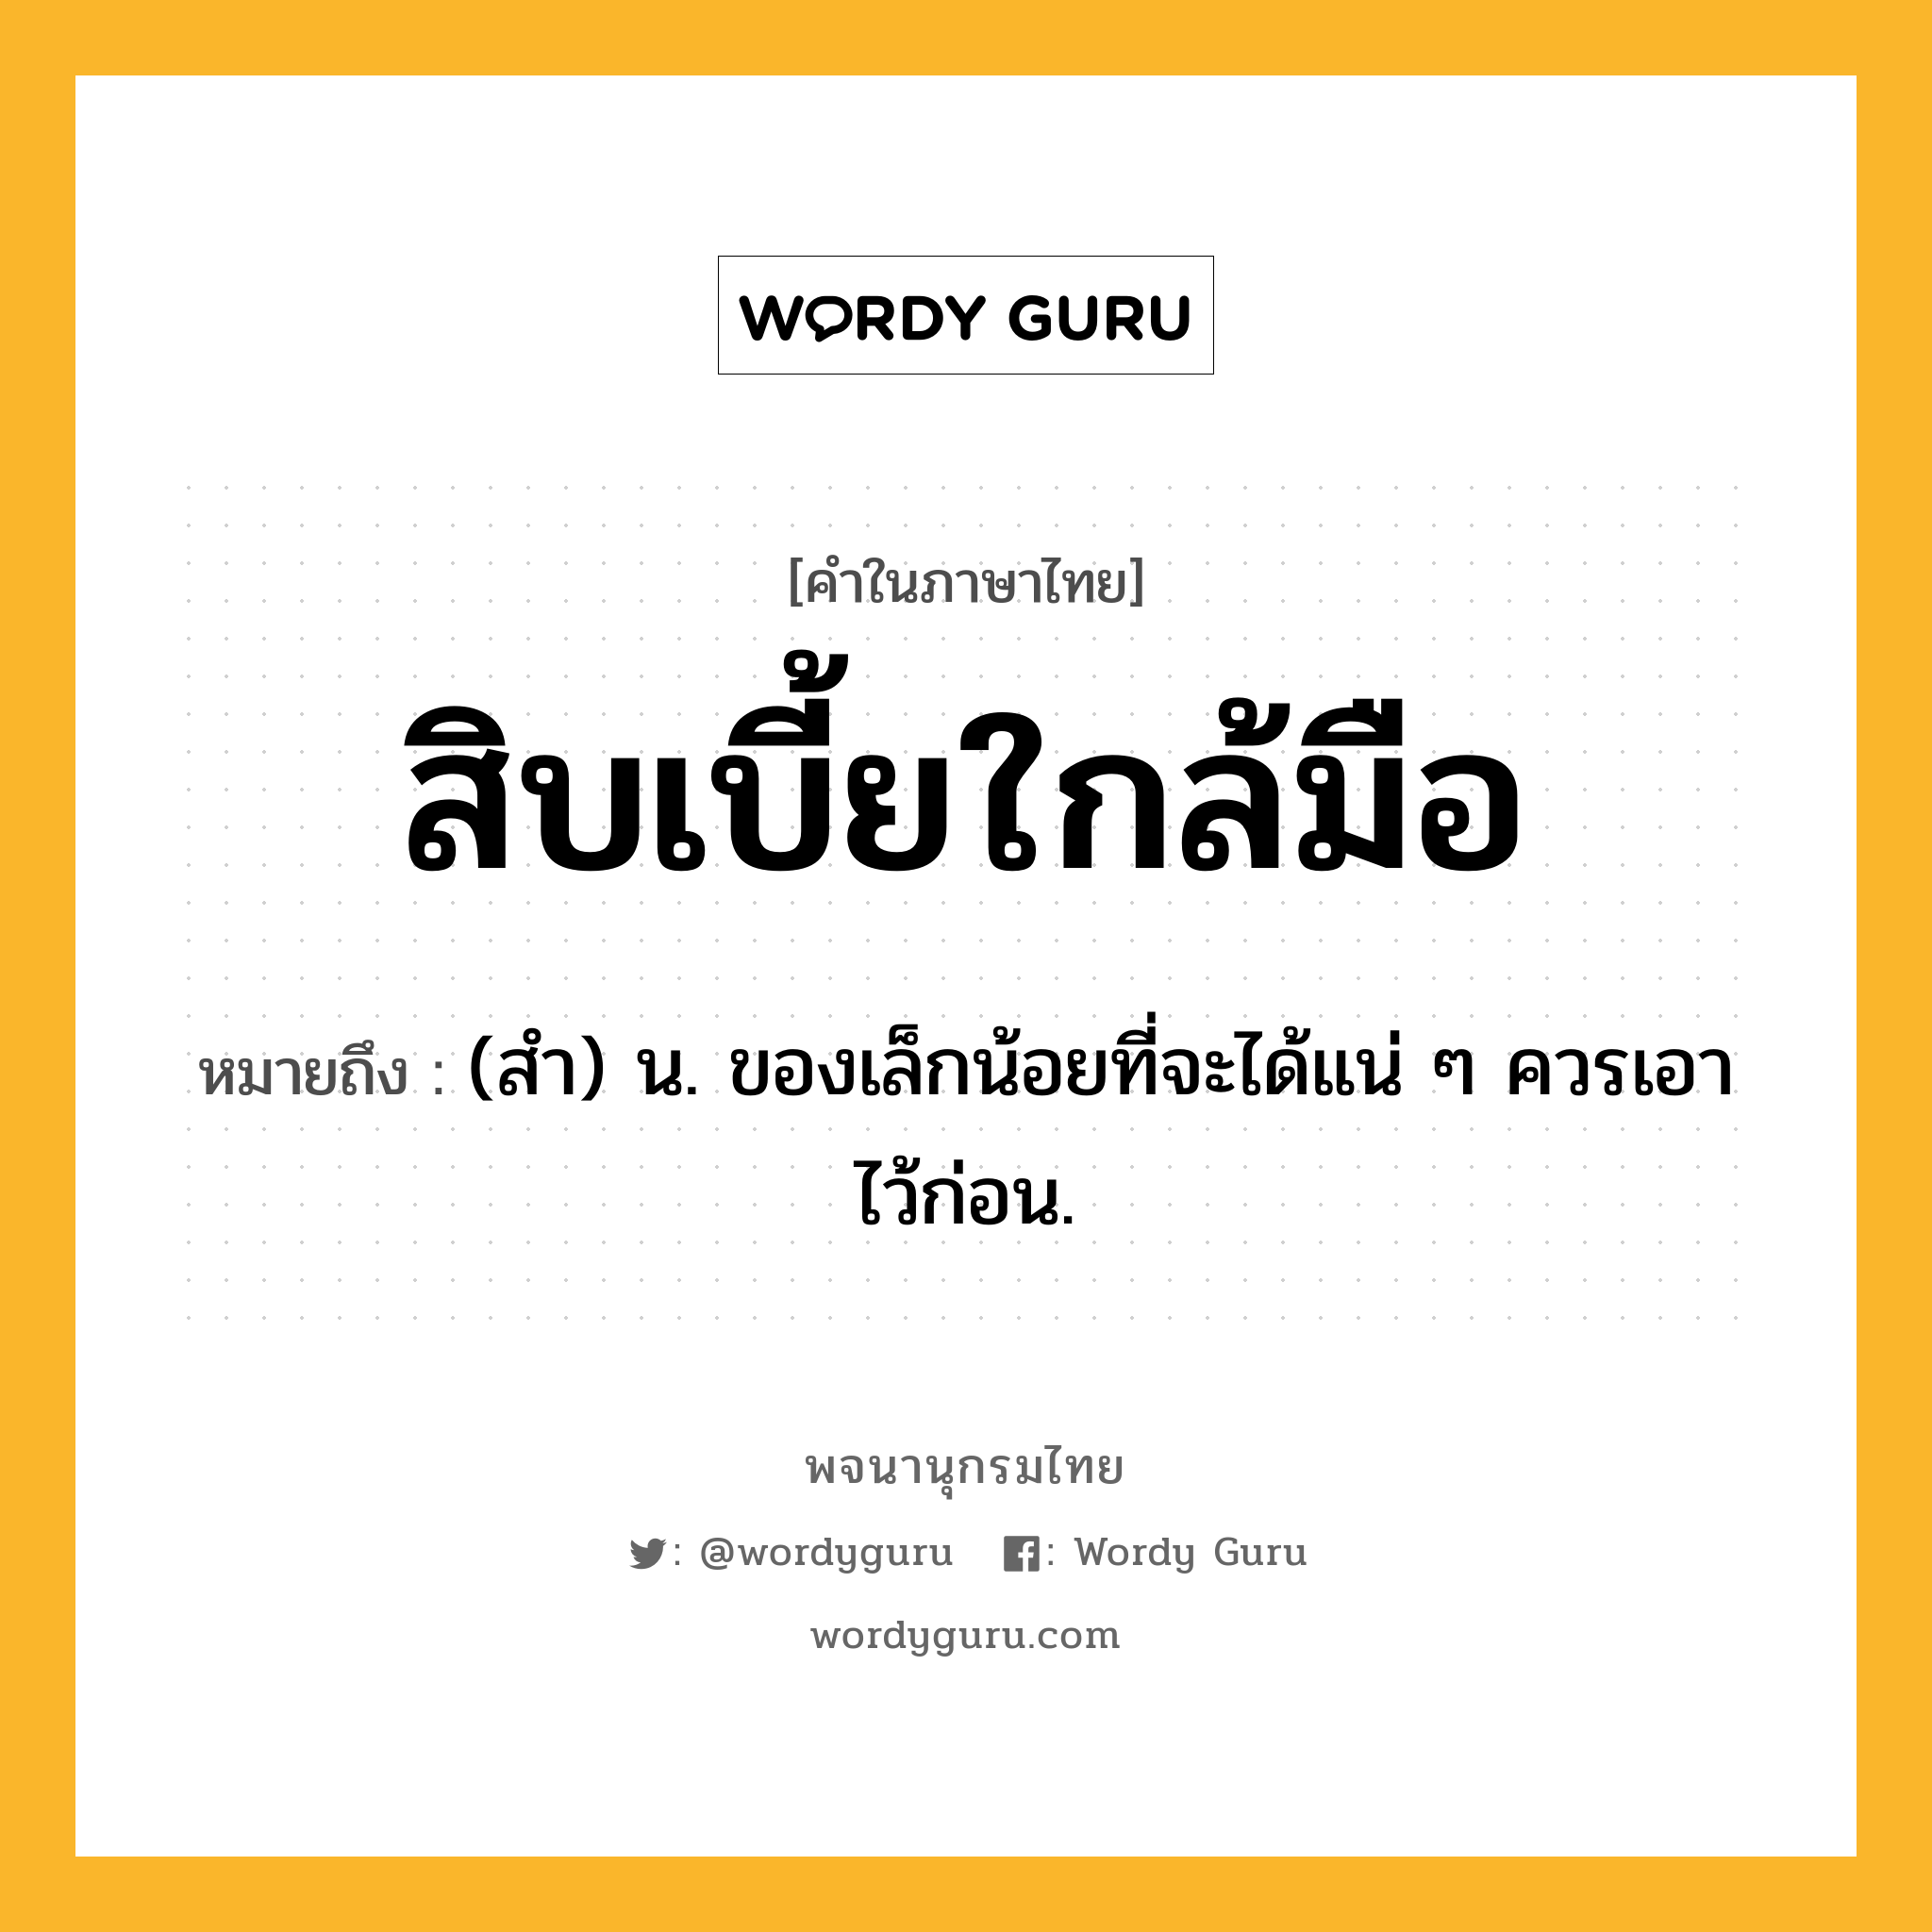 สิบเบี้ยใกล้มือ ความหมาย หมายถึงอะไร?, คำในภาษาไทย สิบเบี้ยใกล้มือ หมายถึง (สํา) น. ของเล็กน้อยที่จะได้แน่ ๆ ควรเอาไว้ก่อน.